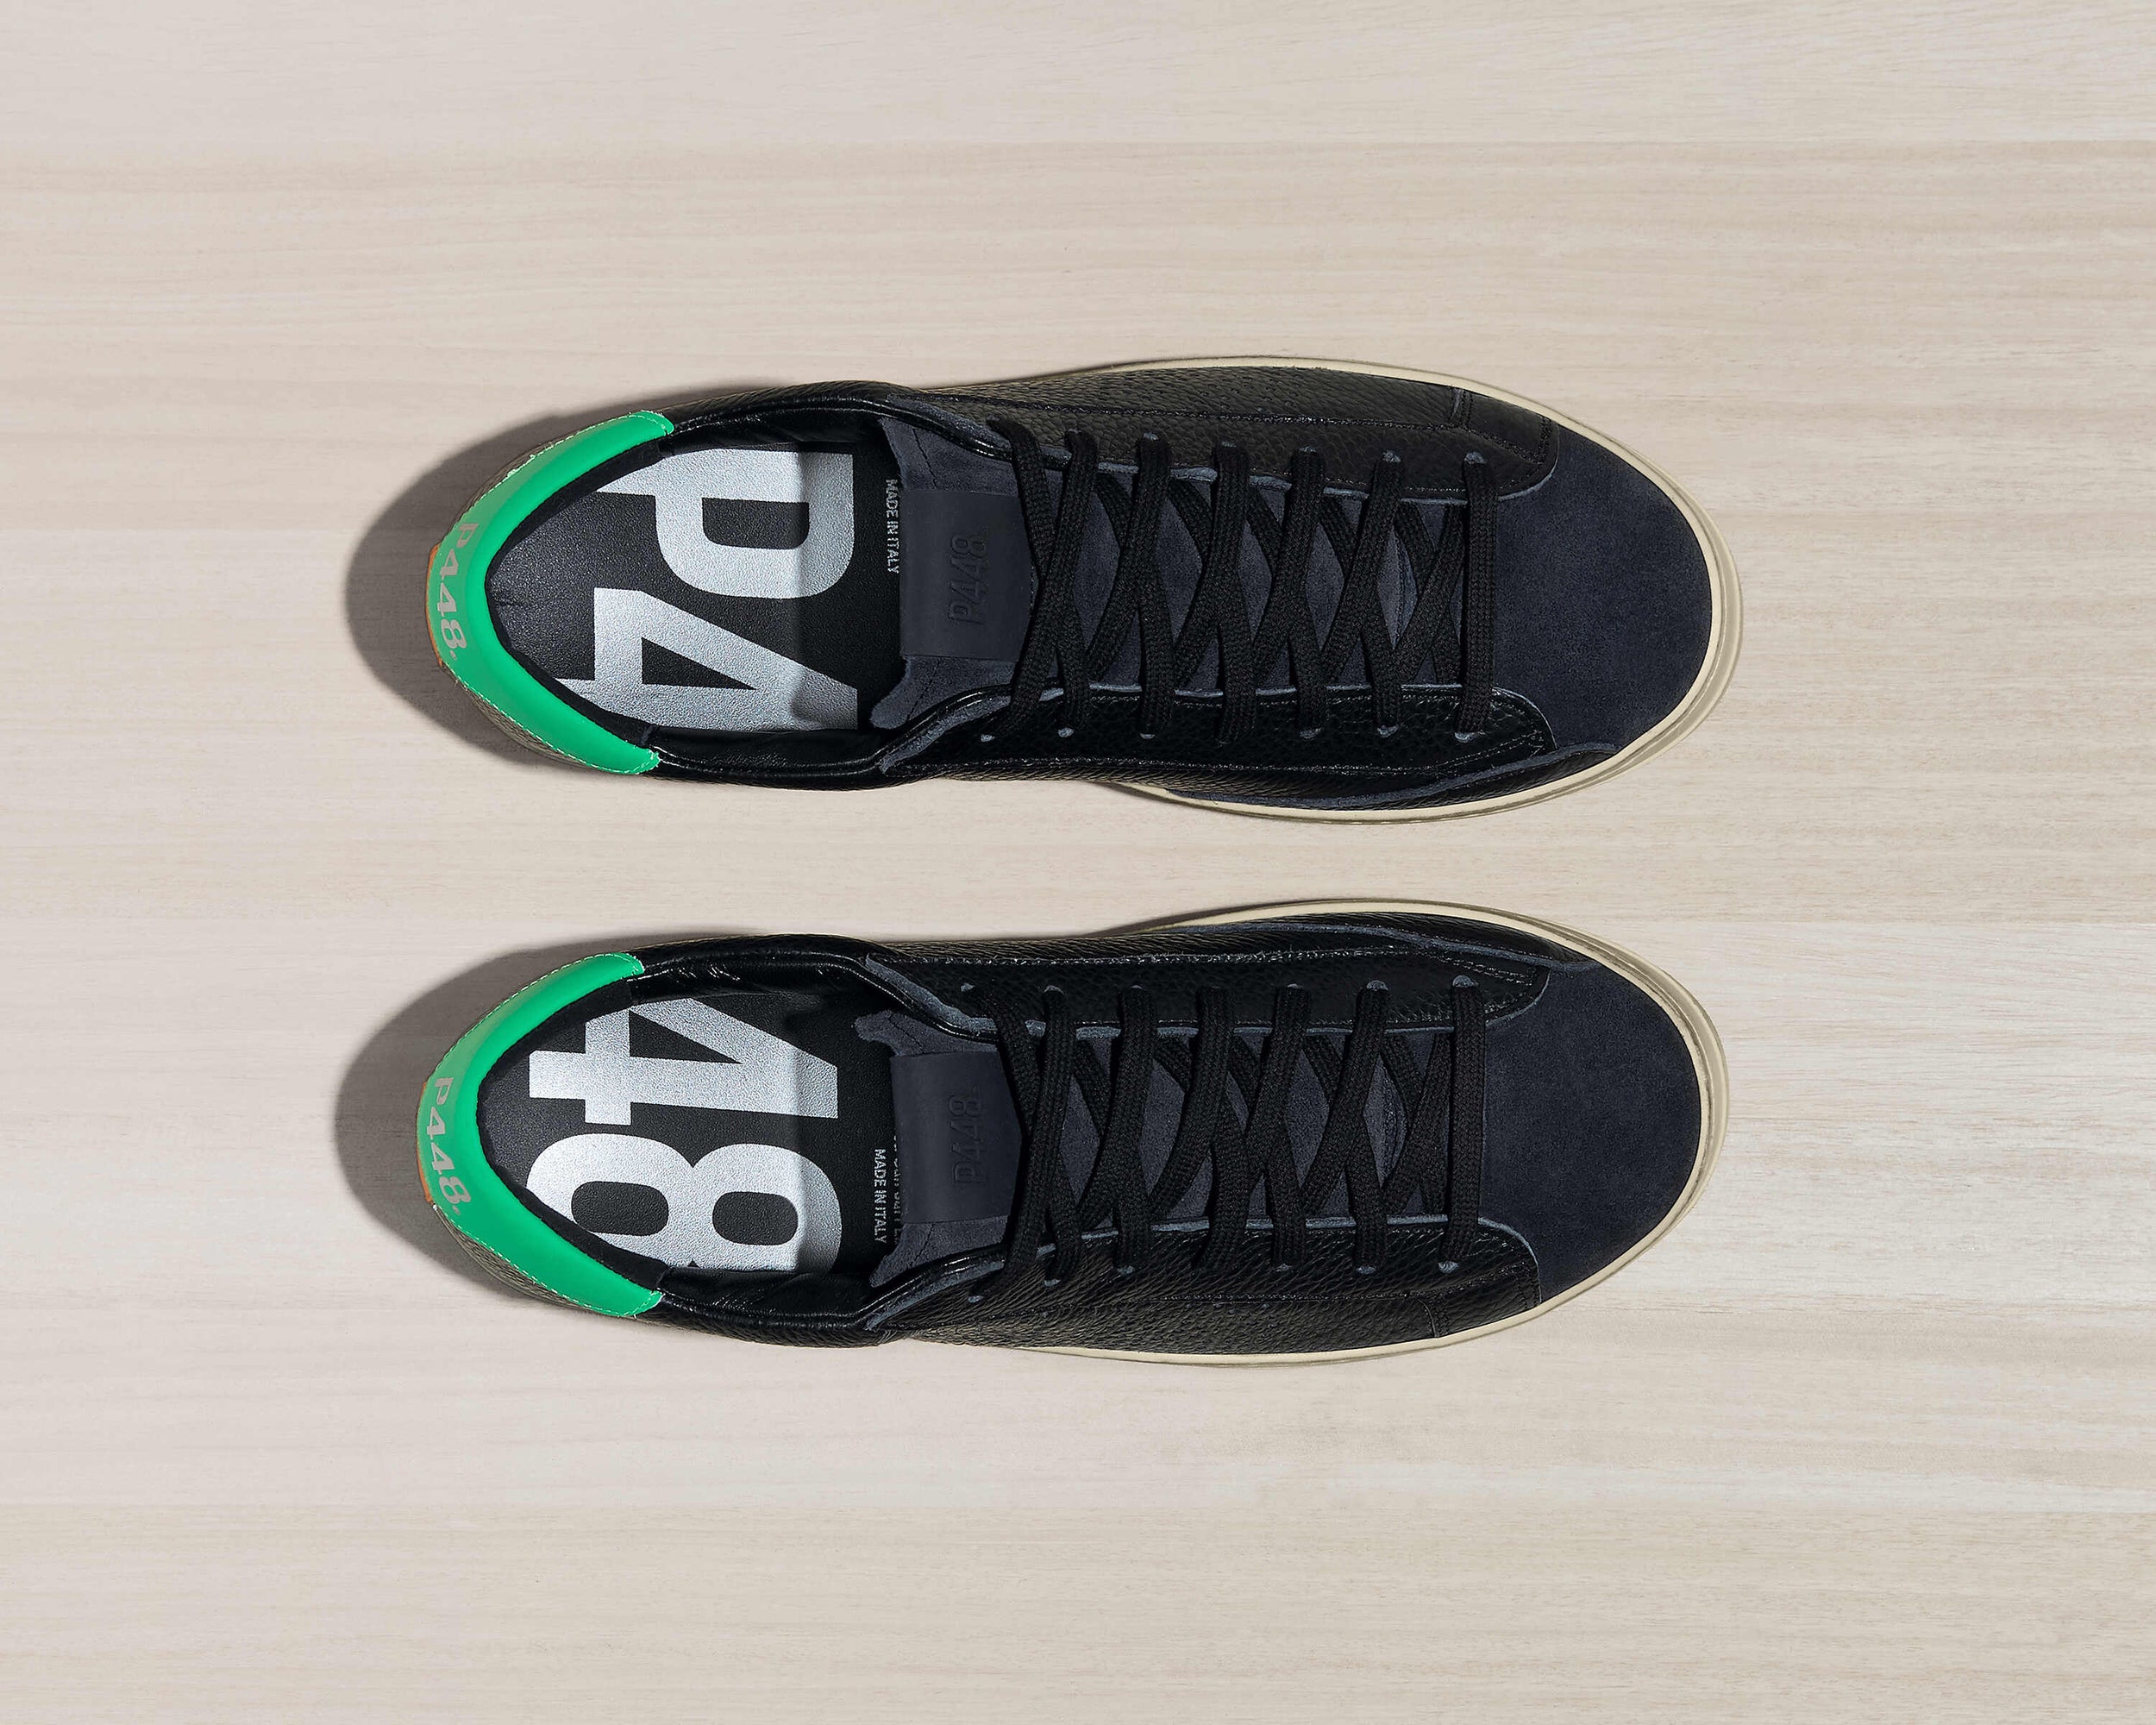 Virgo Air Jordan 13 Custom Name Sneakers Special Gift For Men And